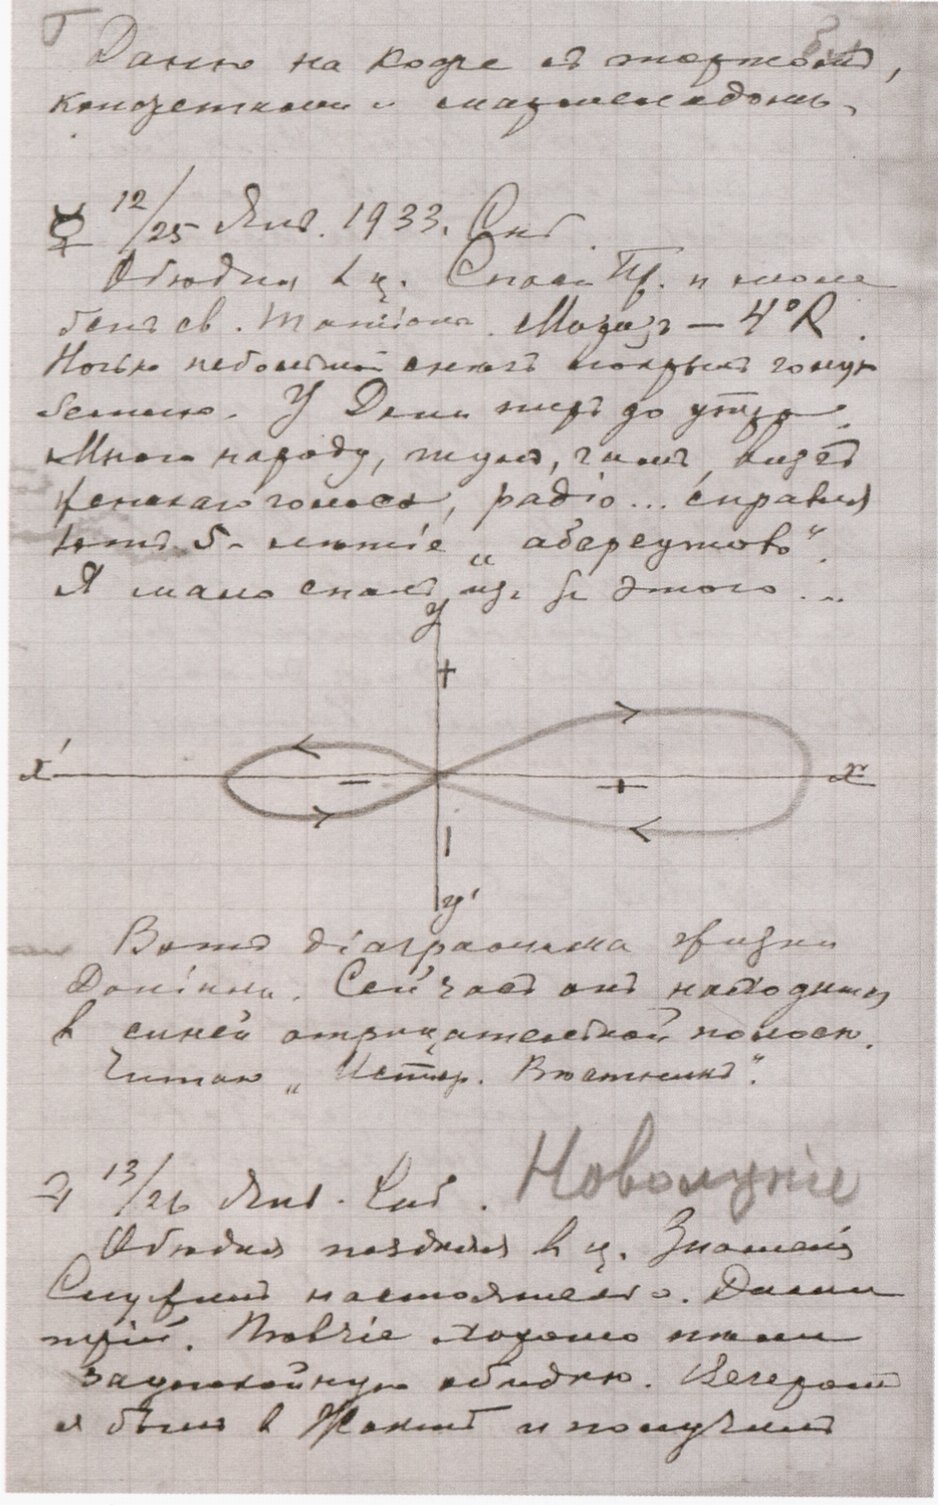 Запись в дневнике И.П. Ювачева от 25 января 1933 года с «диаграммой жизни Даниила»